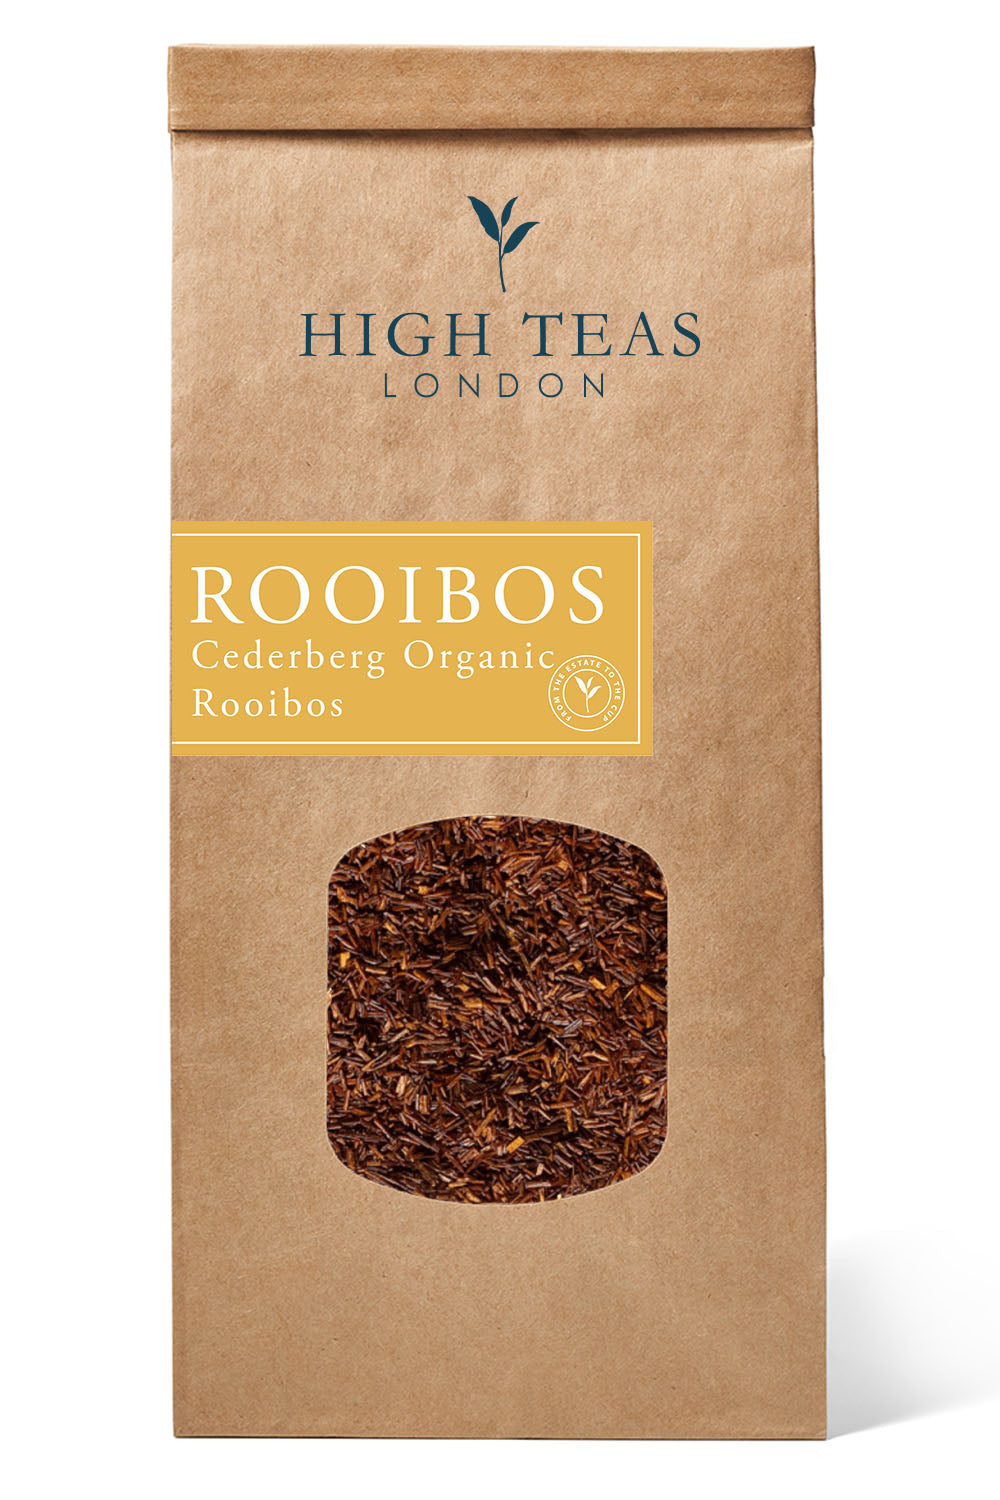 Cederberg Organic Rooibos-250 grams-Loose Leaf Tea-High Teas